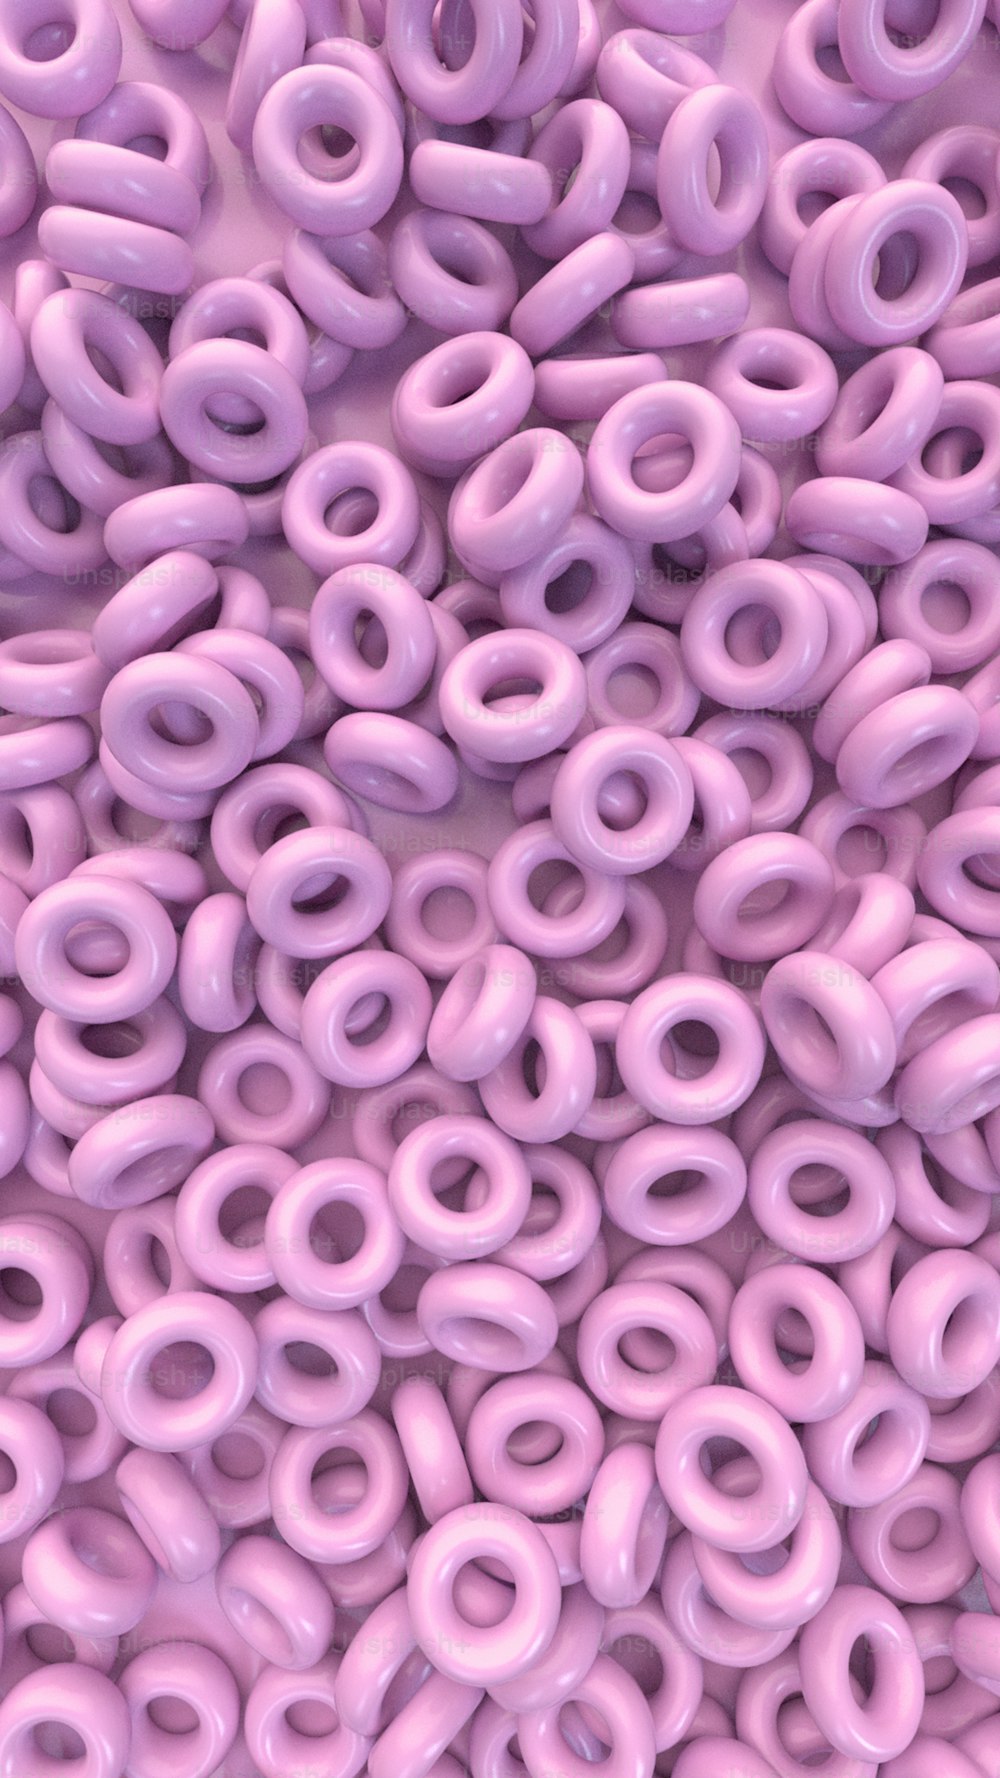 Ein Haufen rosa Donuts ist übereinander gestapelt